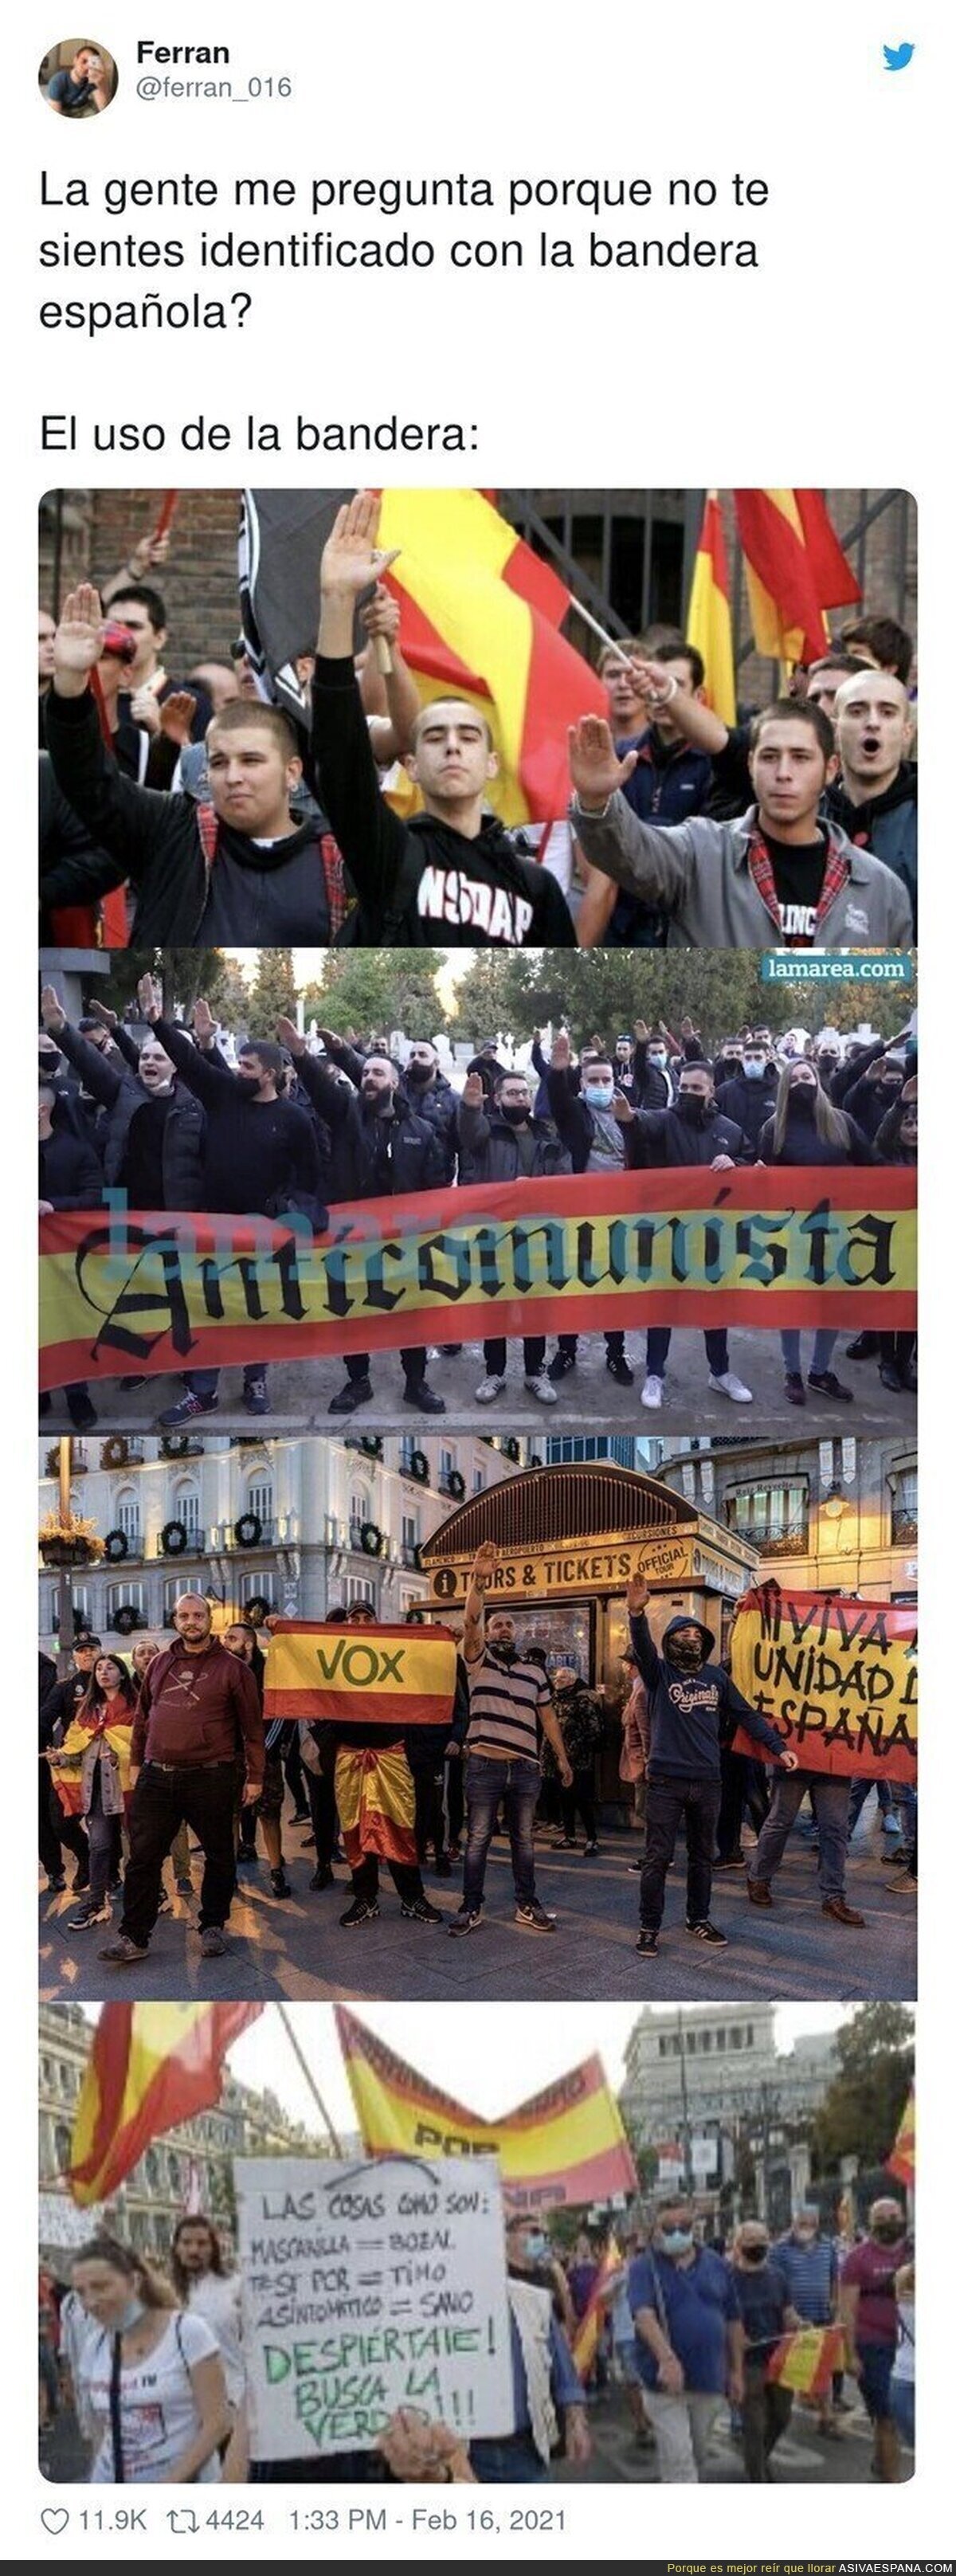 La ultraderecha hace odiar la bandera española